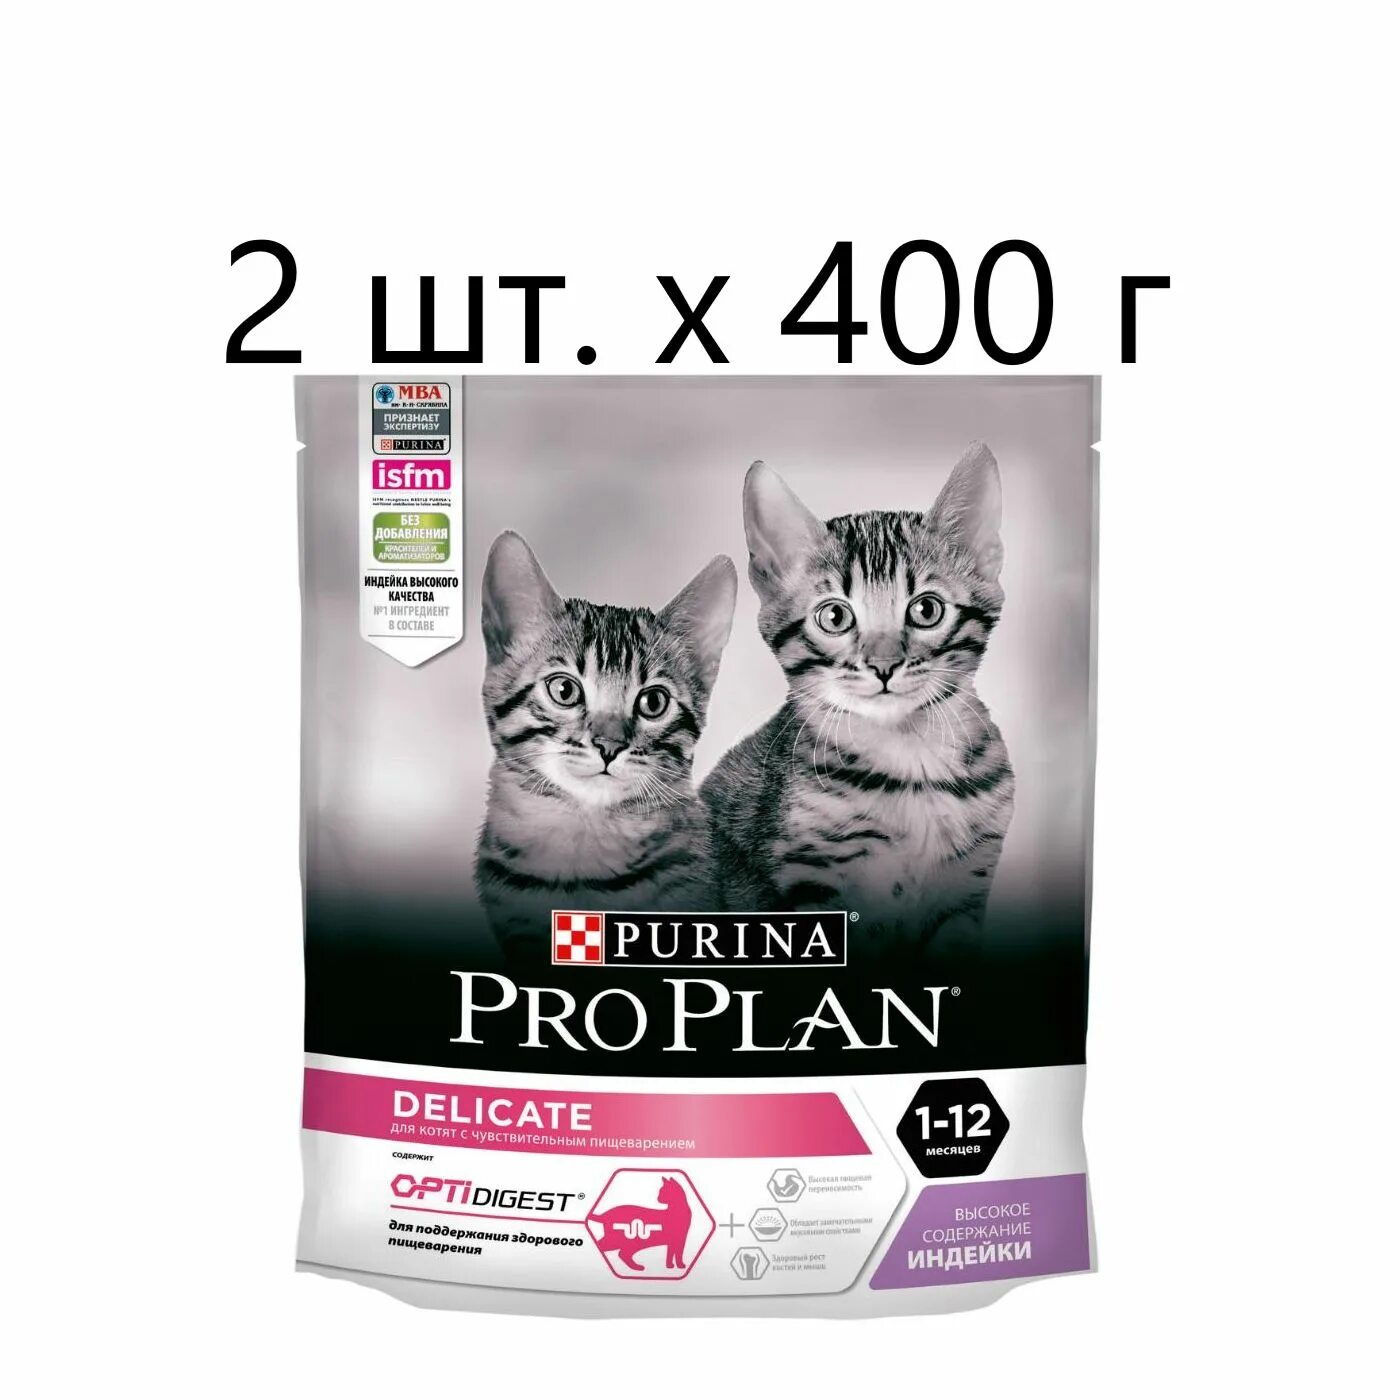 Purina Pro Plan для котят. Проплан для котят сухой корм. Корм для котят Пурина Проплан сухой. Пурина про план корм для котят.